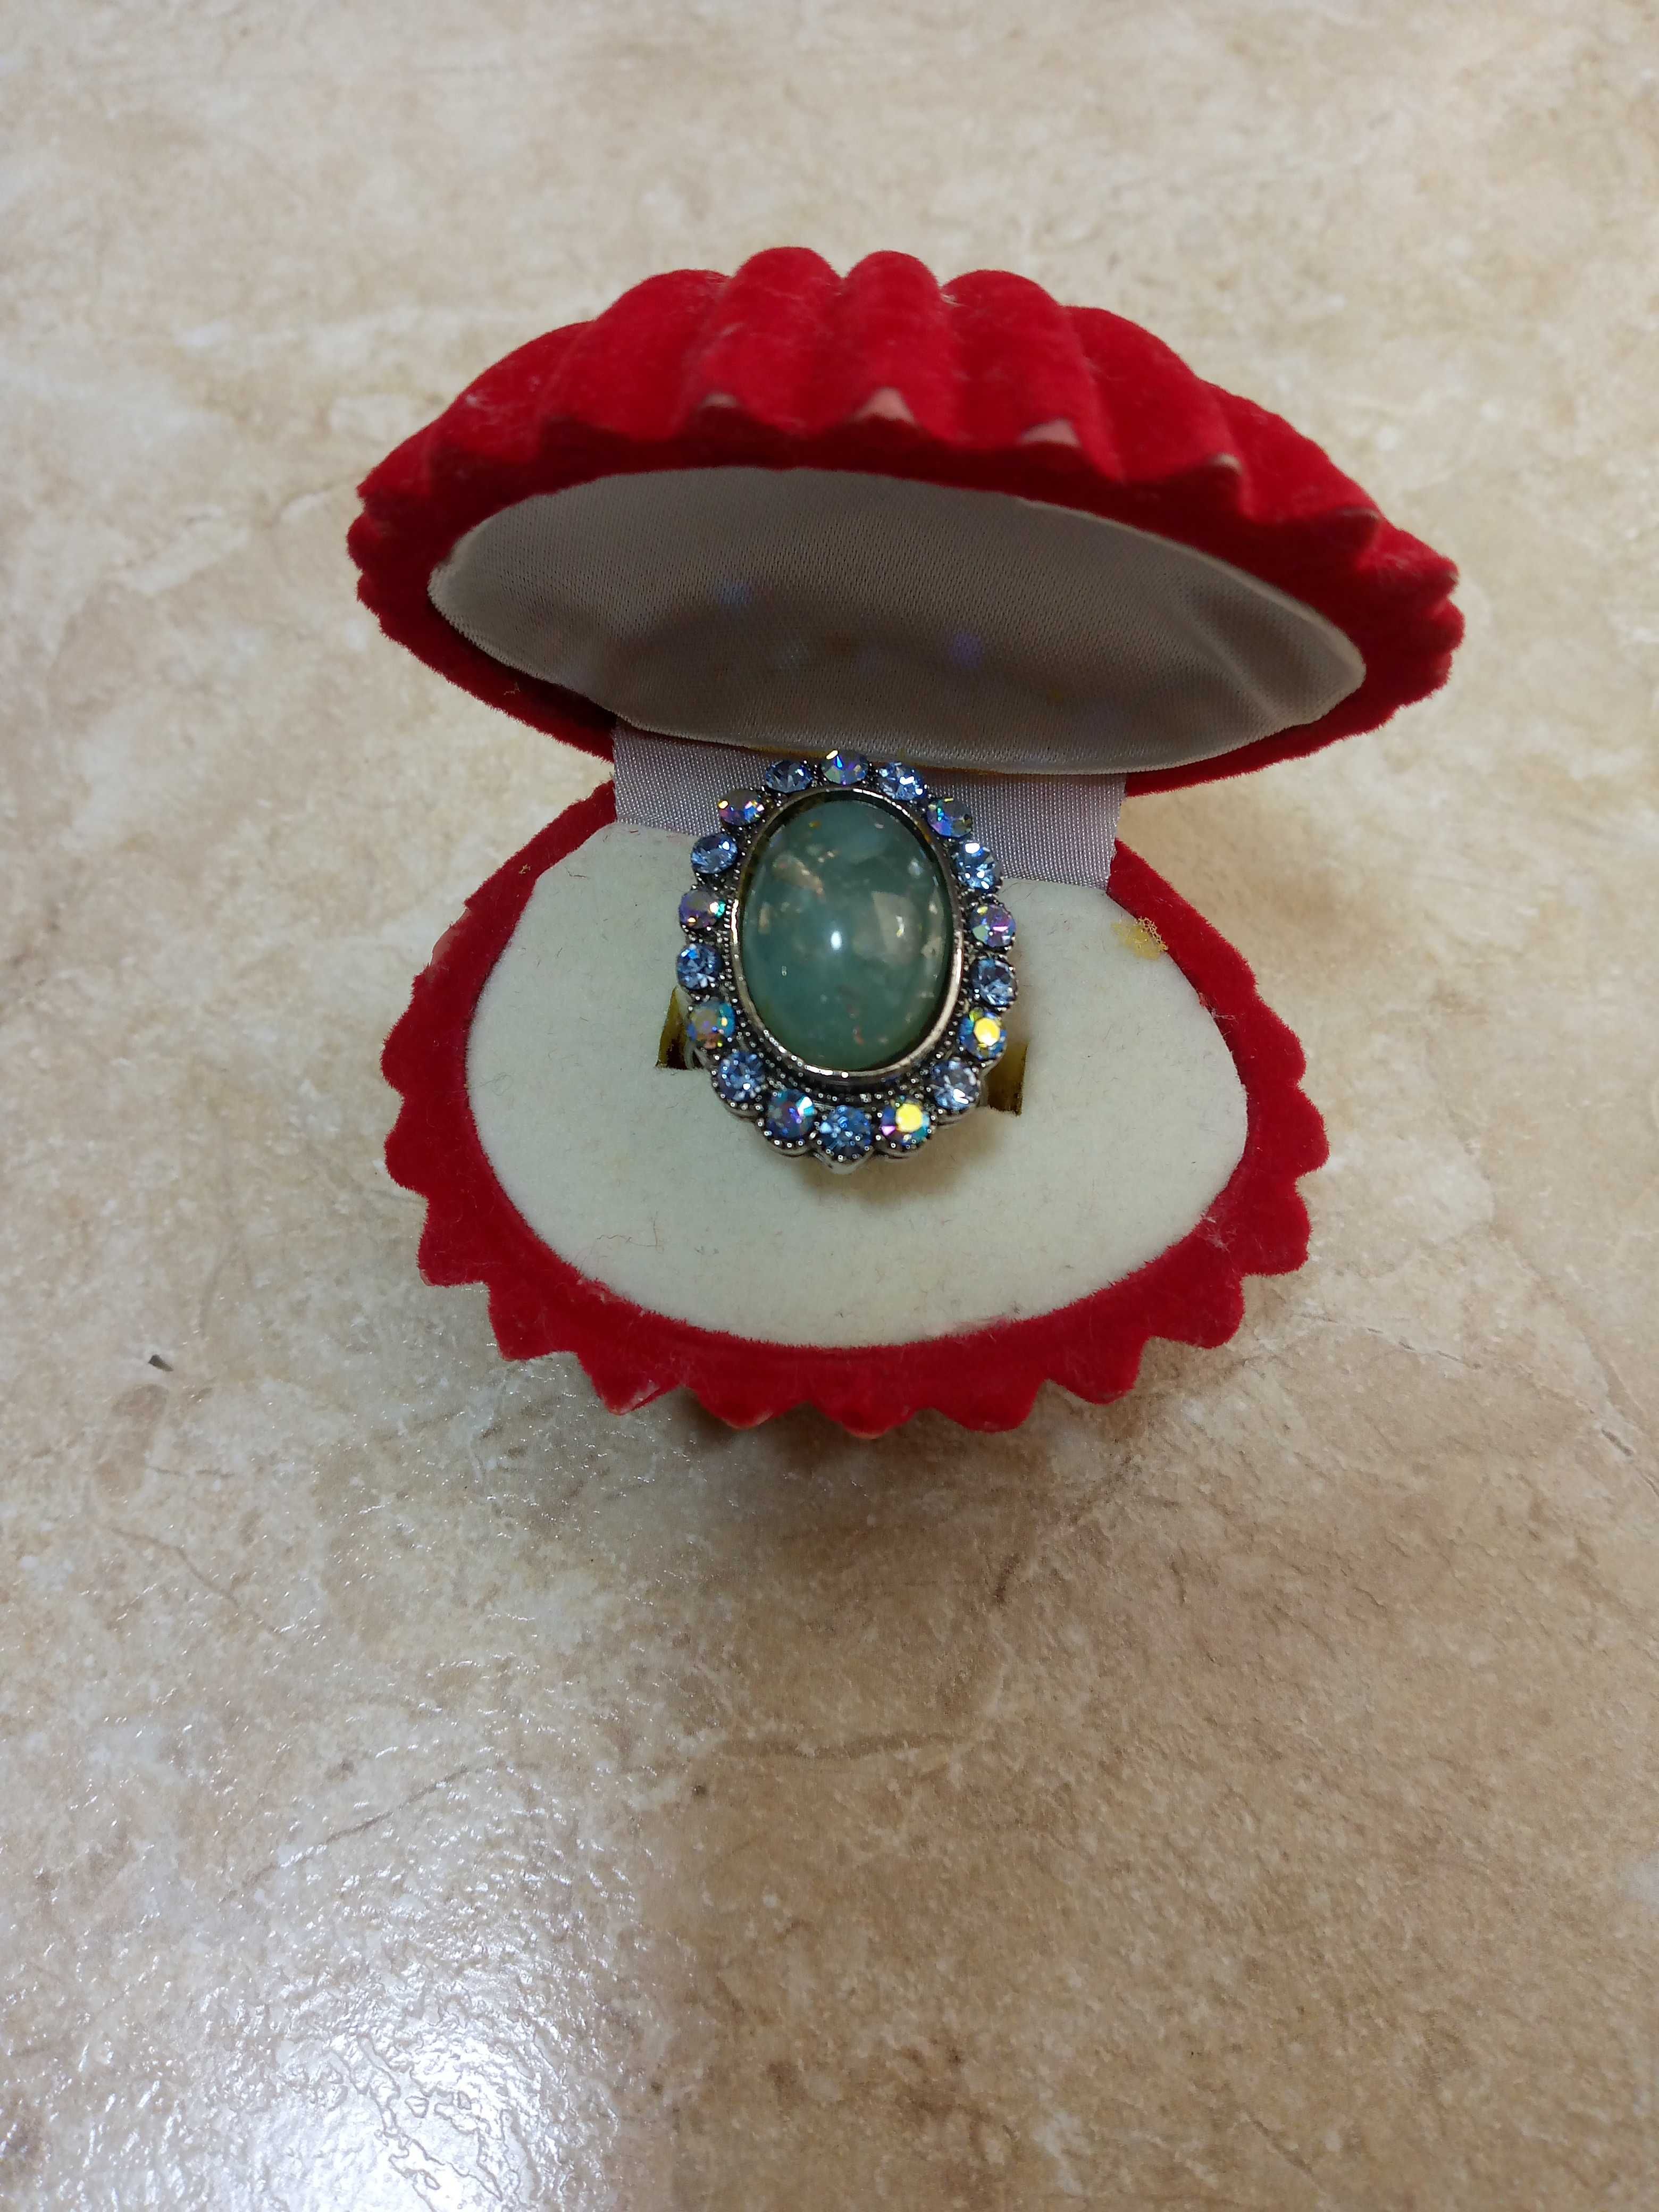 Шикарное кольцо с большим камнем.Цена 100тысяч